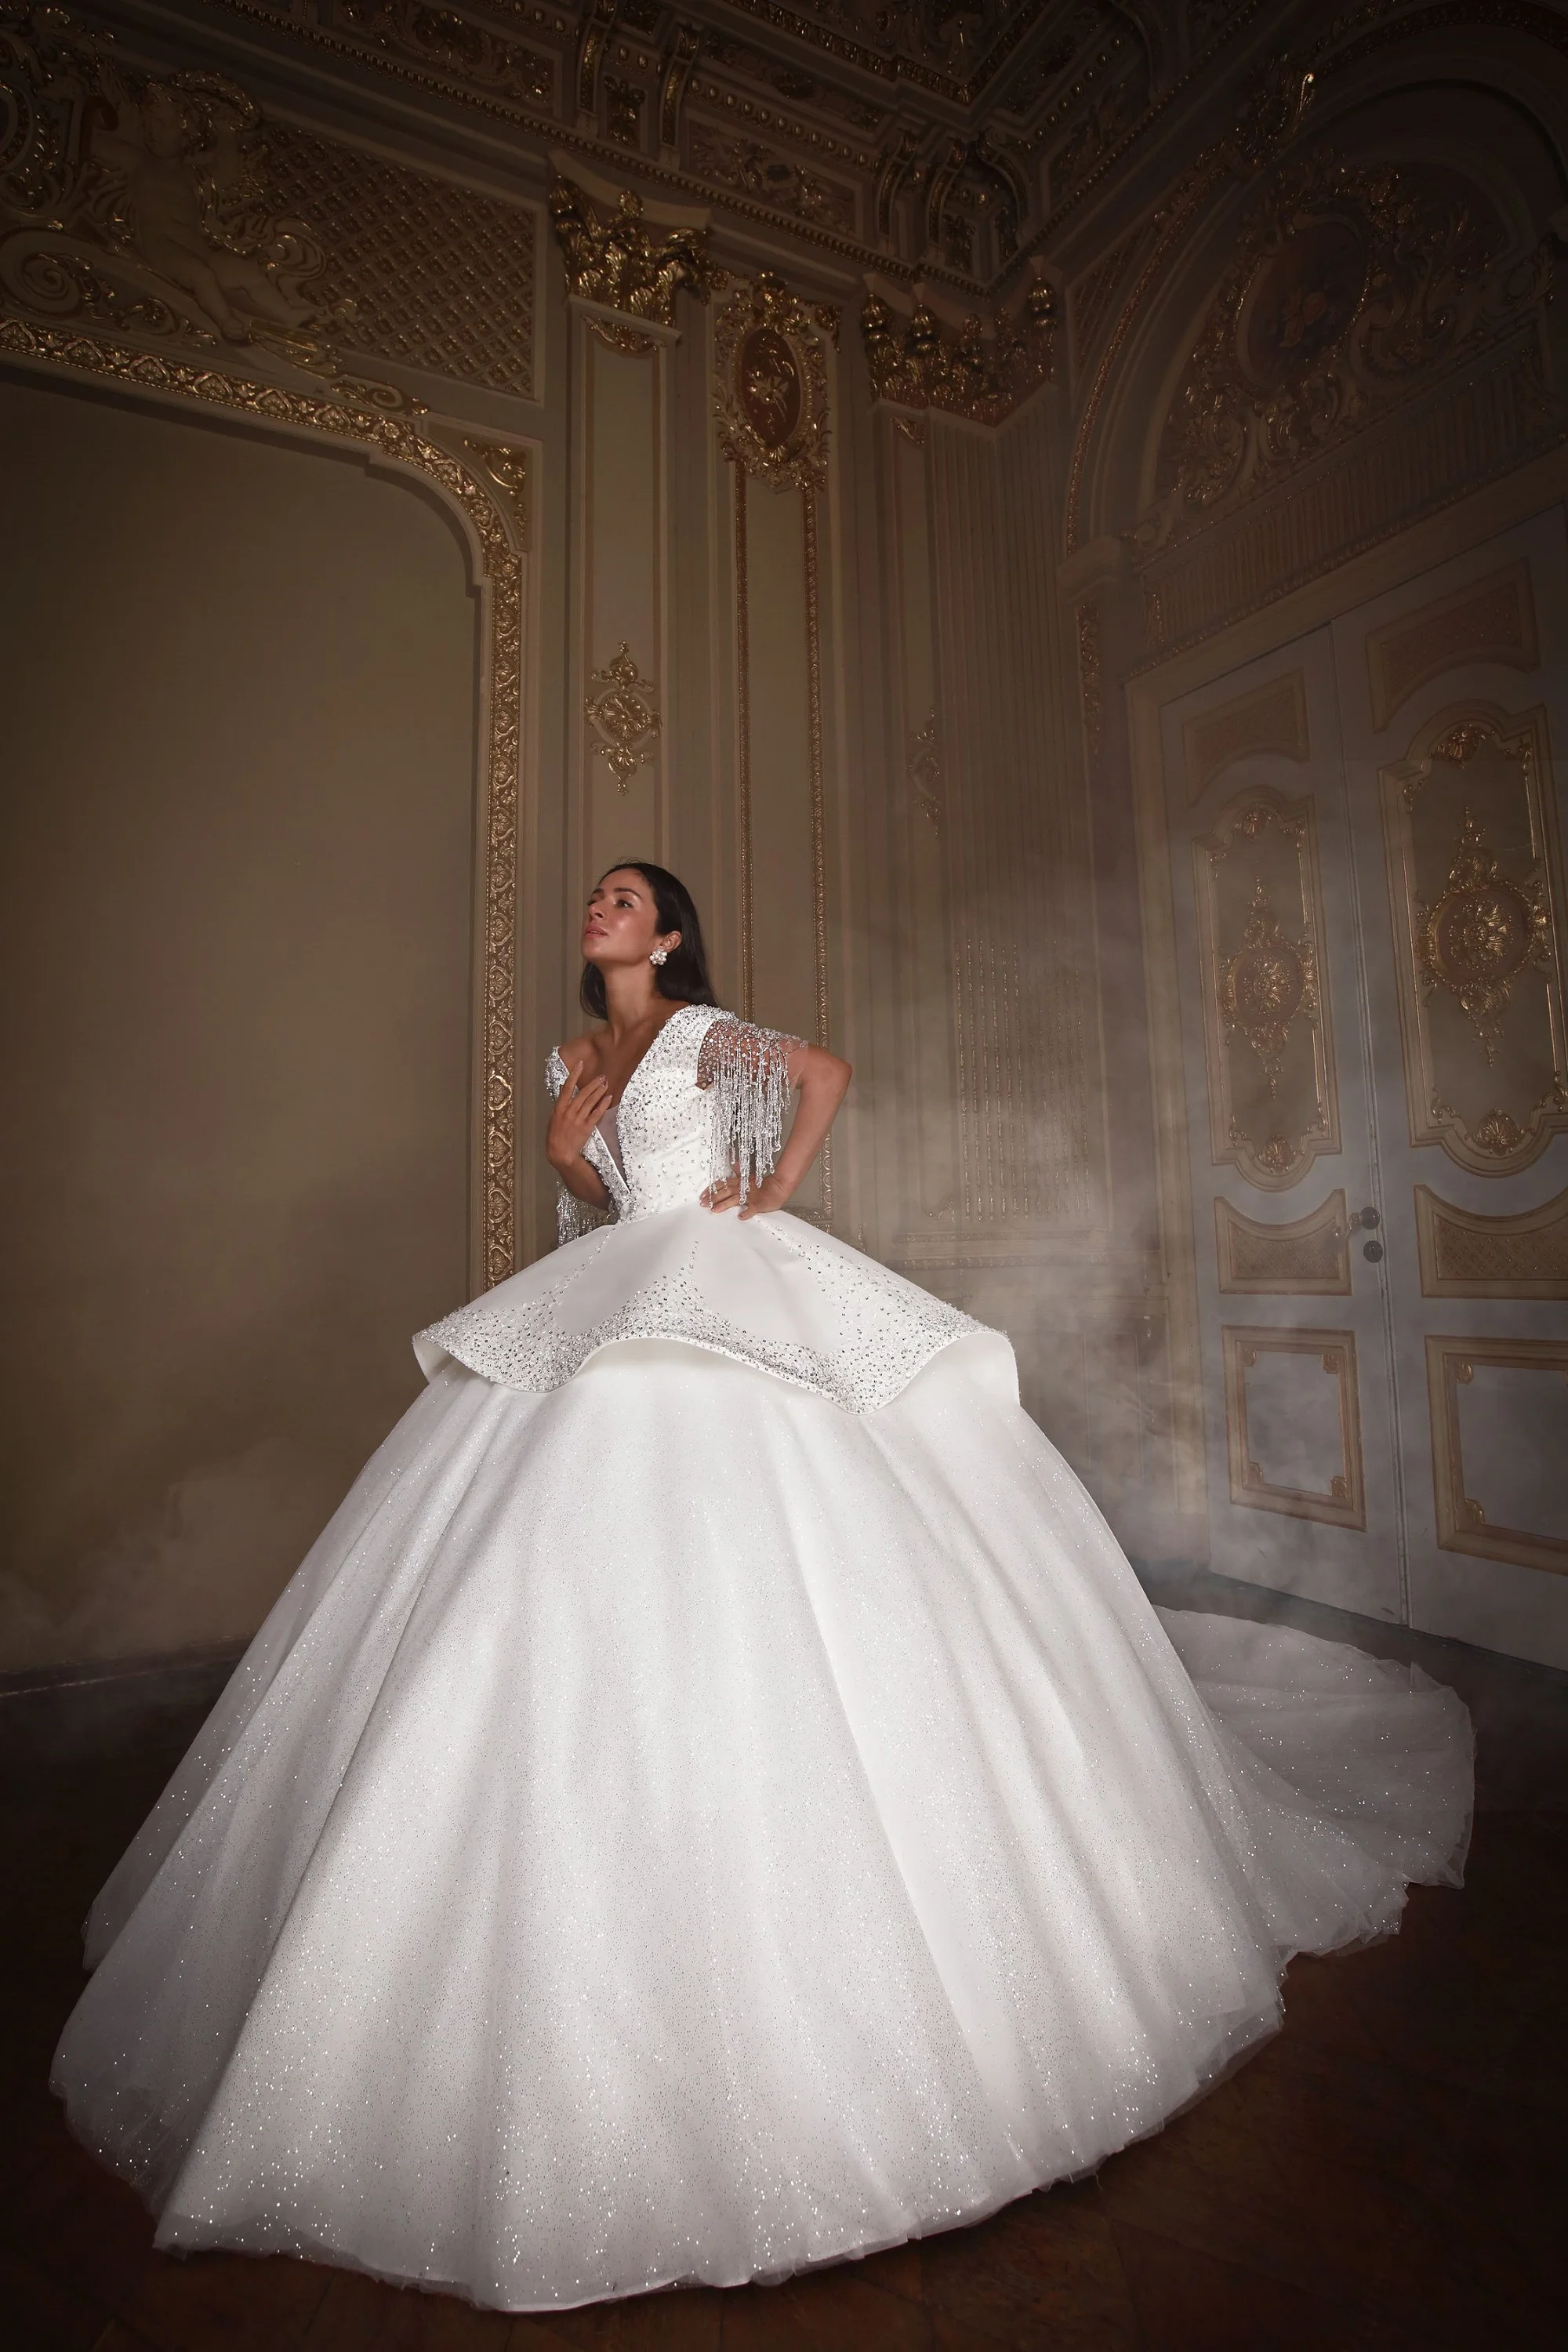 Злата Огневич и Анна Буткевич примеряли роскошные свадебные платья от Андре Тана - фото 425442